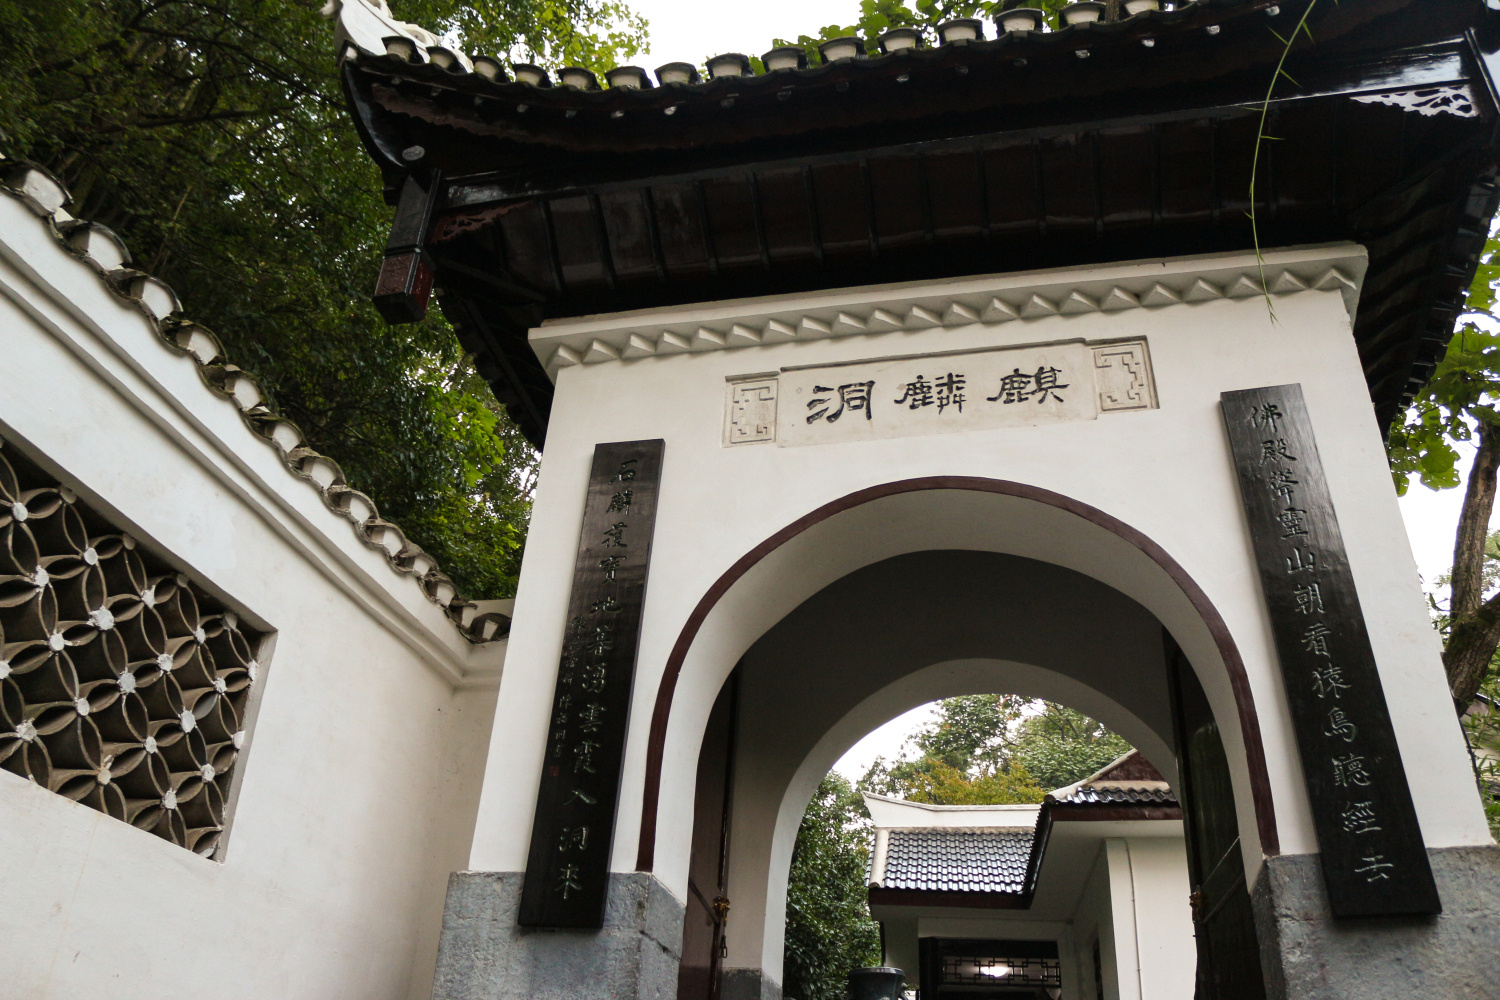 黔灵山,贵阳最大市民公园,曾囚禁过西安事变的英雄